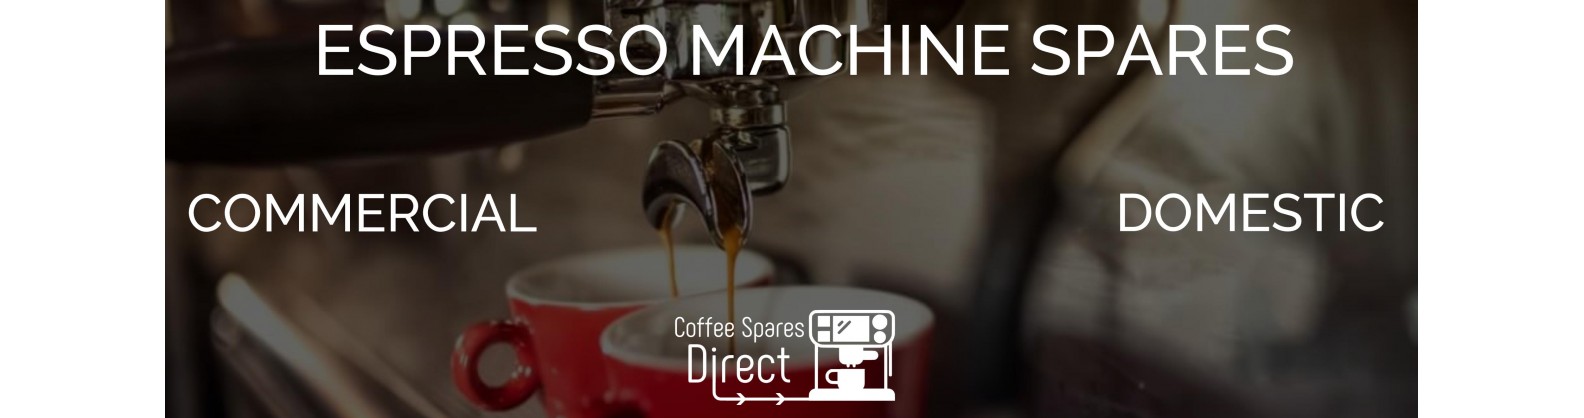 Espresso Machine Spares 